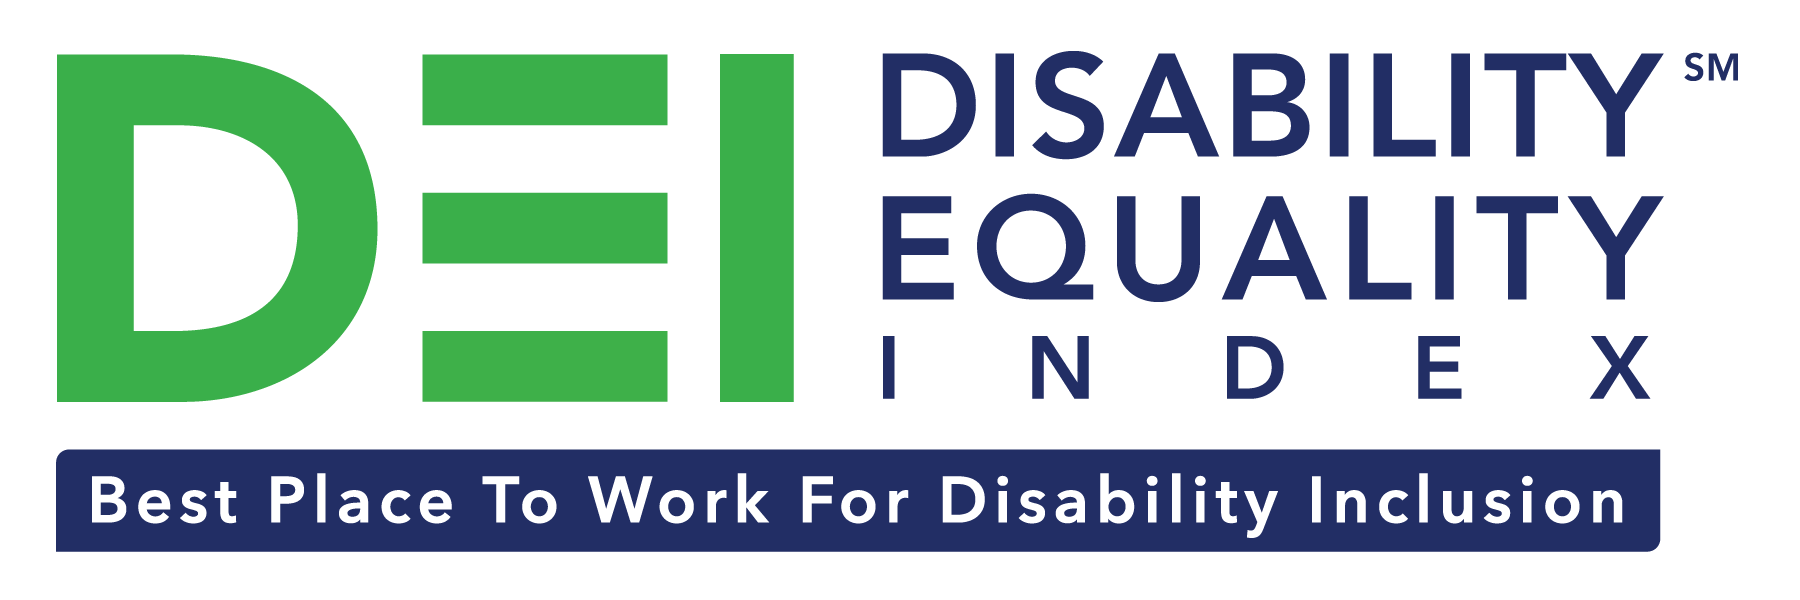 2019 Disability Equa